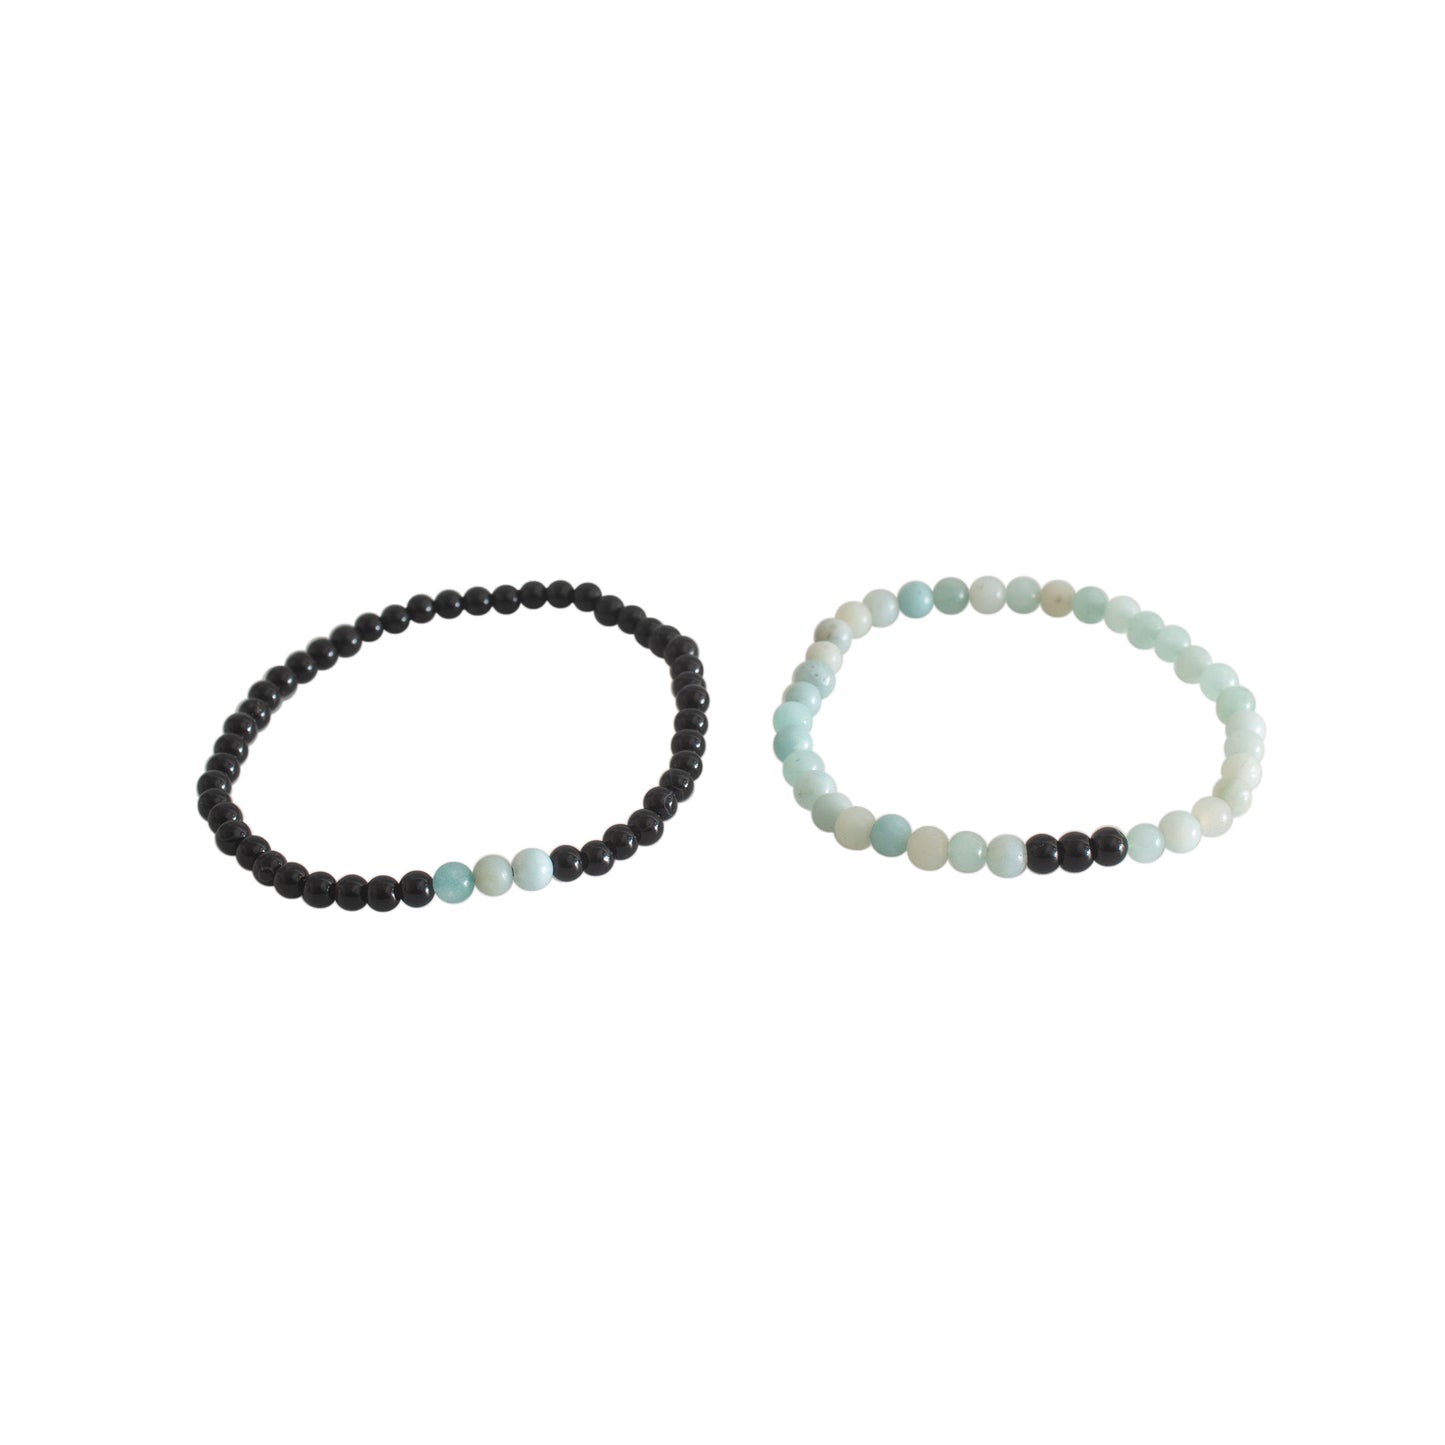 Amazonite and Black Tourmaline Couple Bracelet 4mm Beads